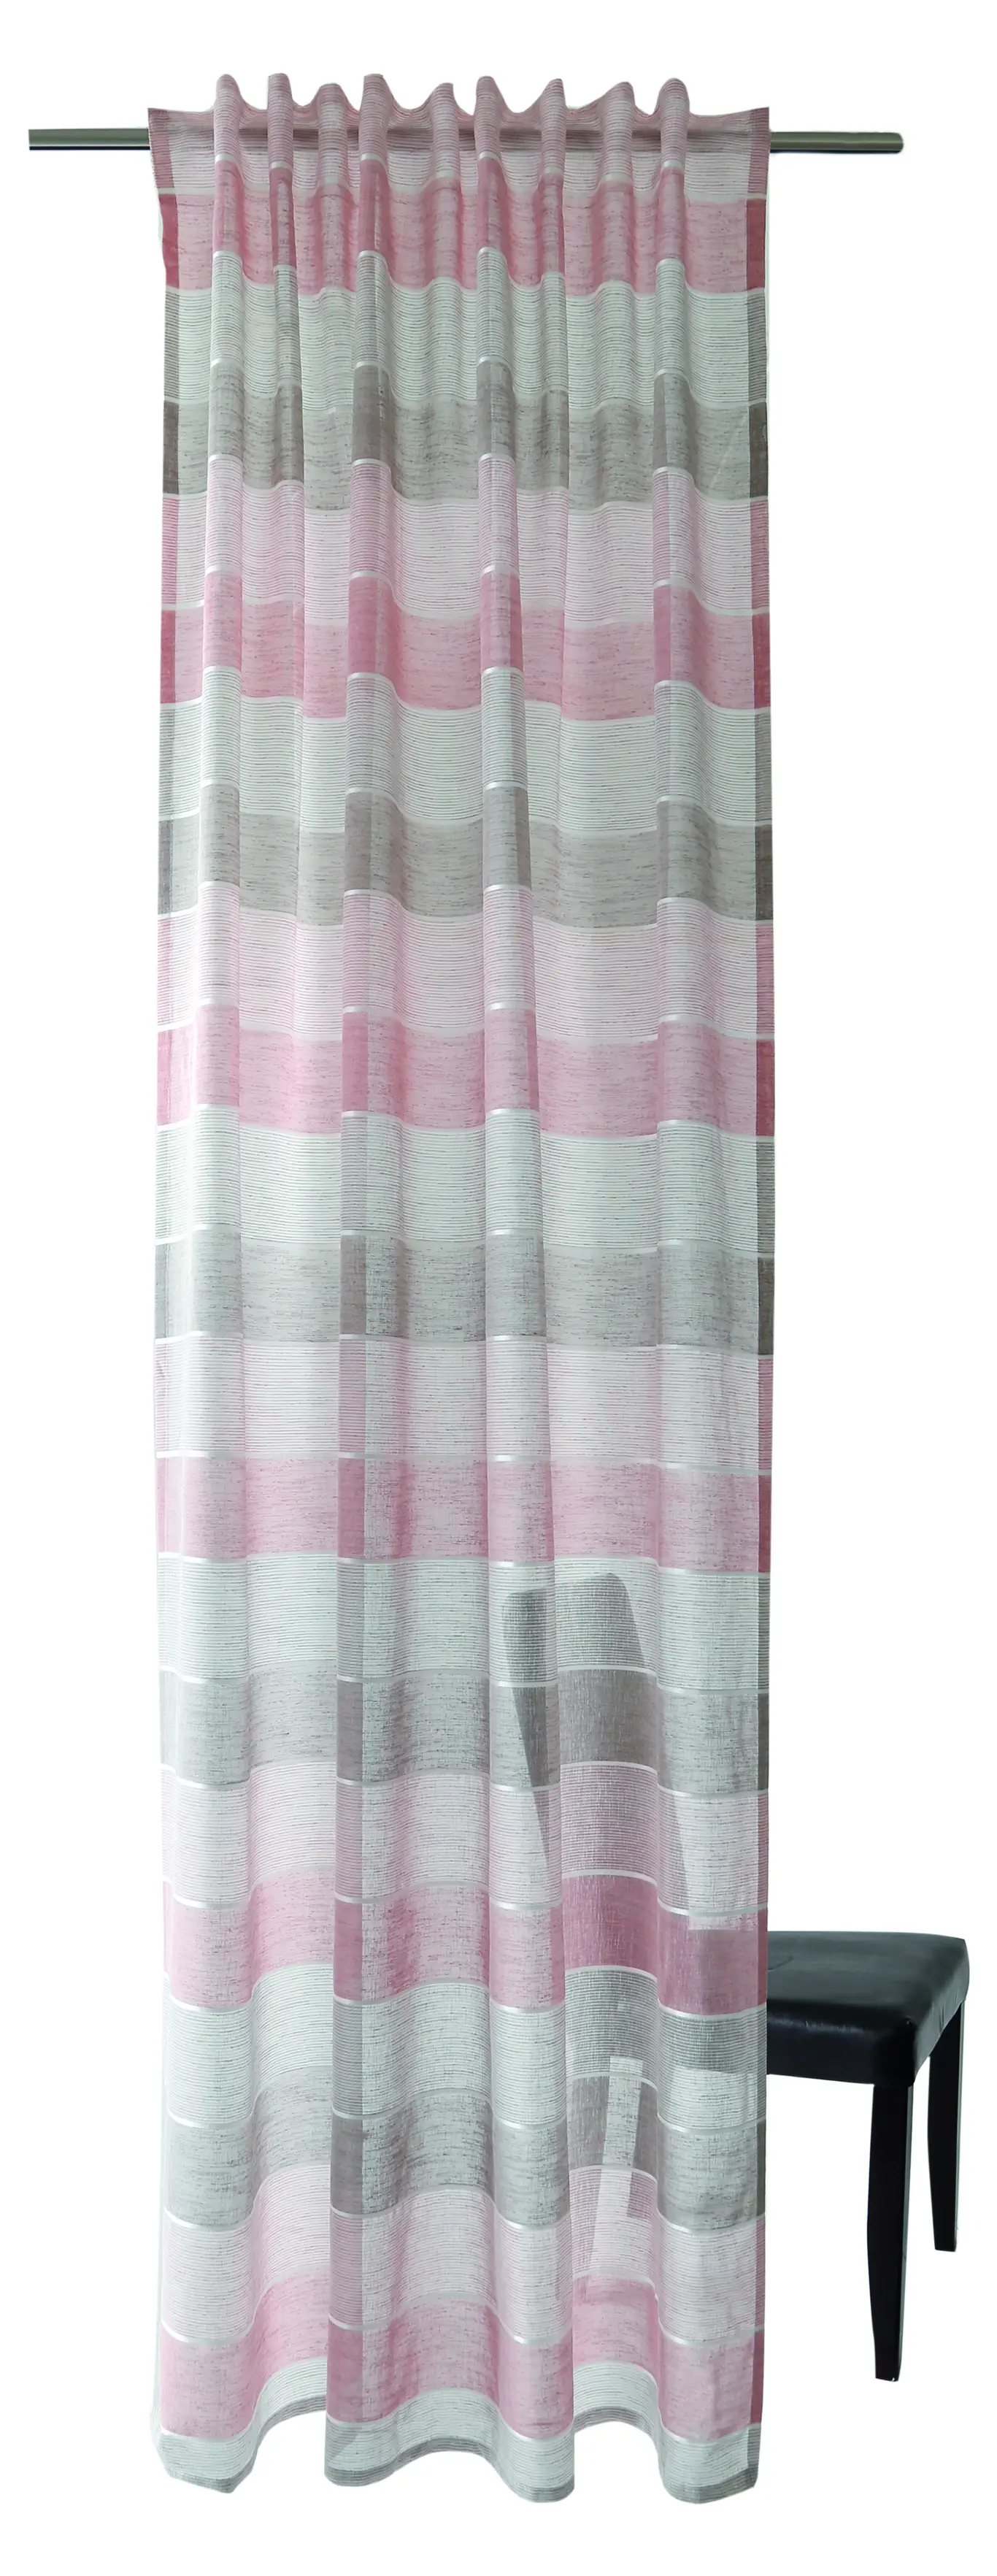 Vorhang pink-grau-braun Streifen | Gardinen